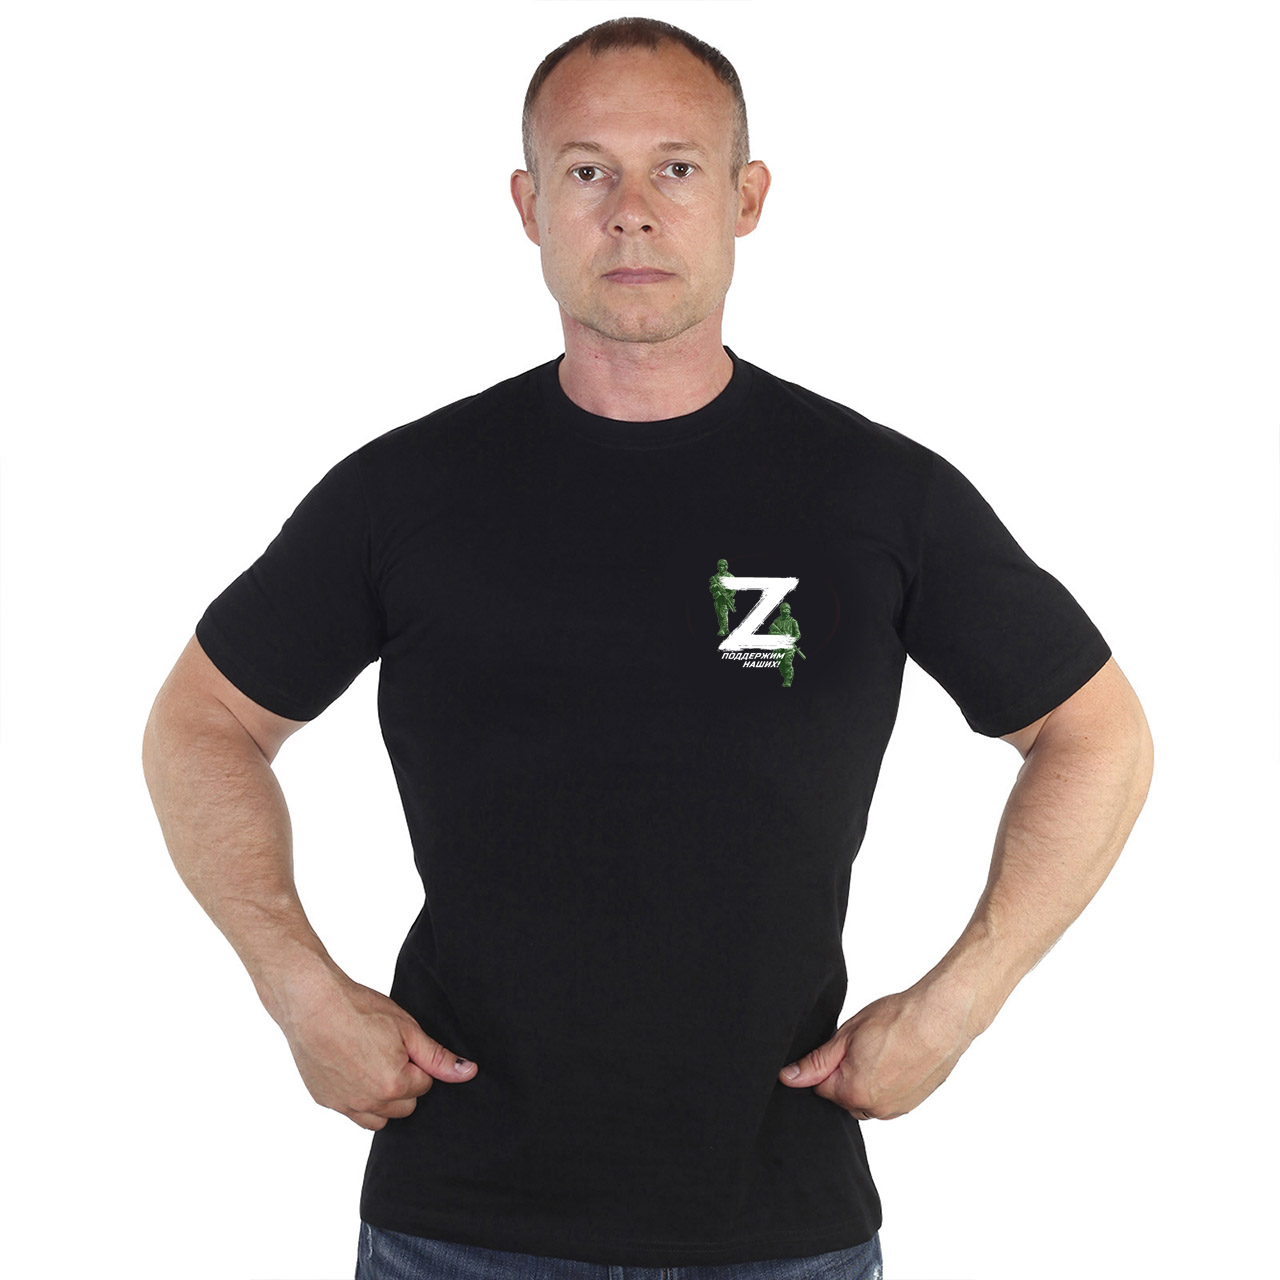 Купить в интернет магазине футболку черного цвета с принтом Z поддержим наших